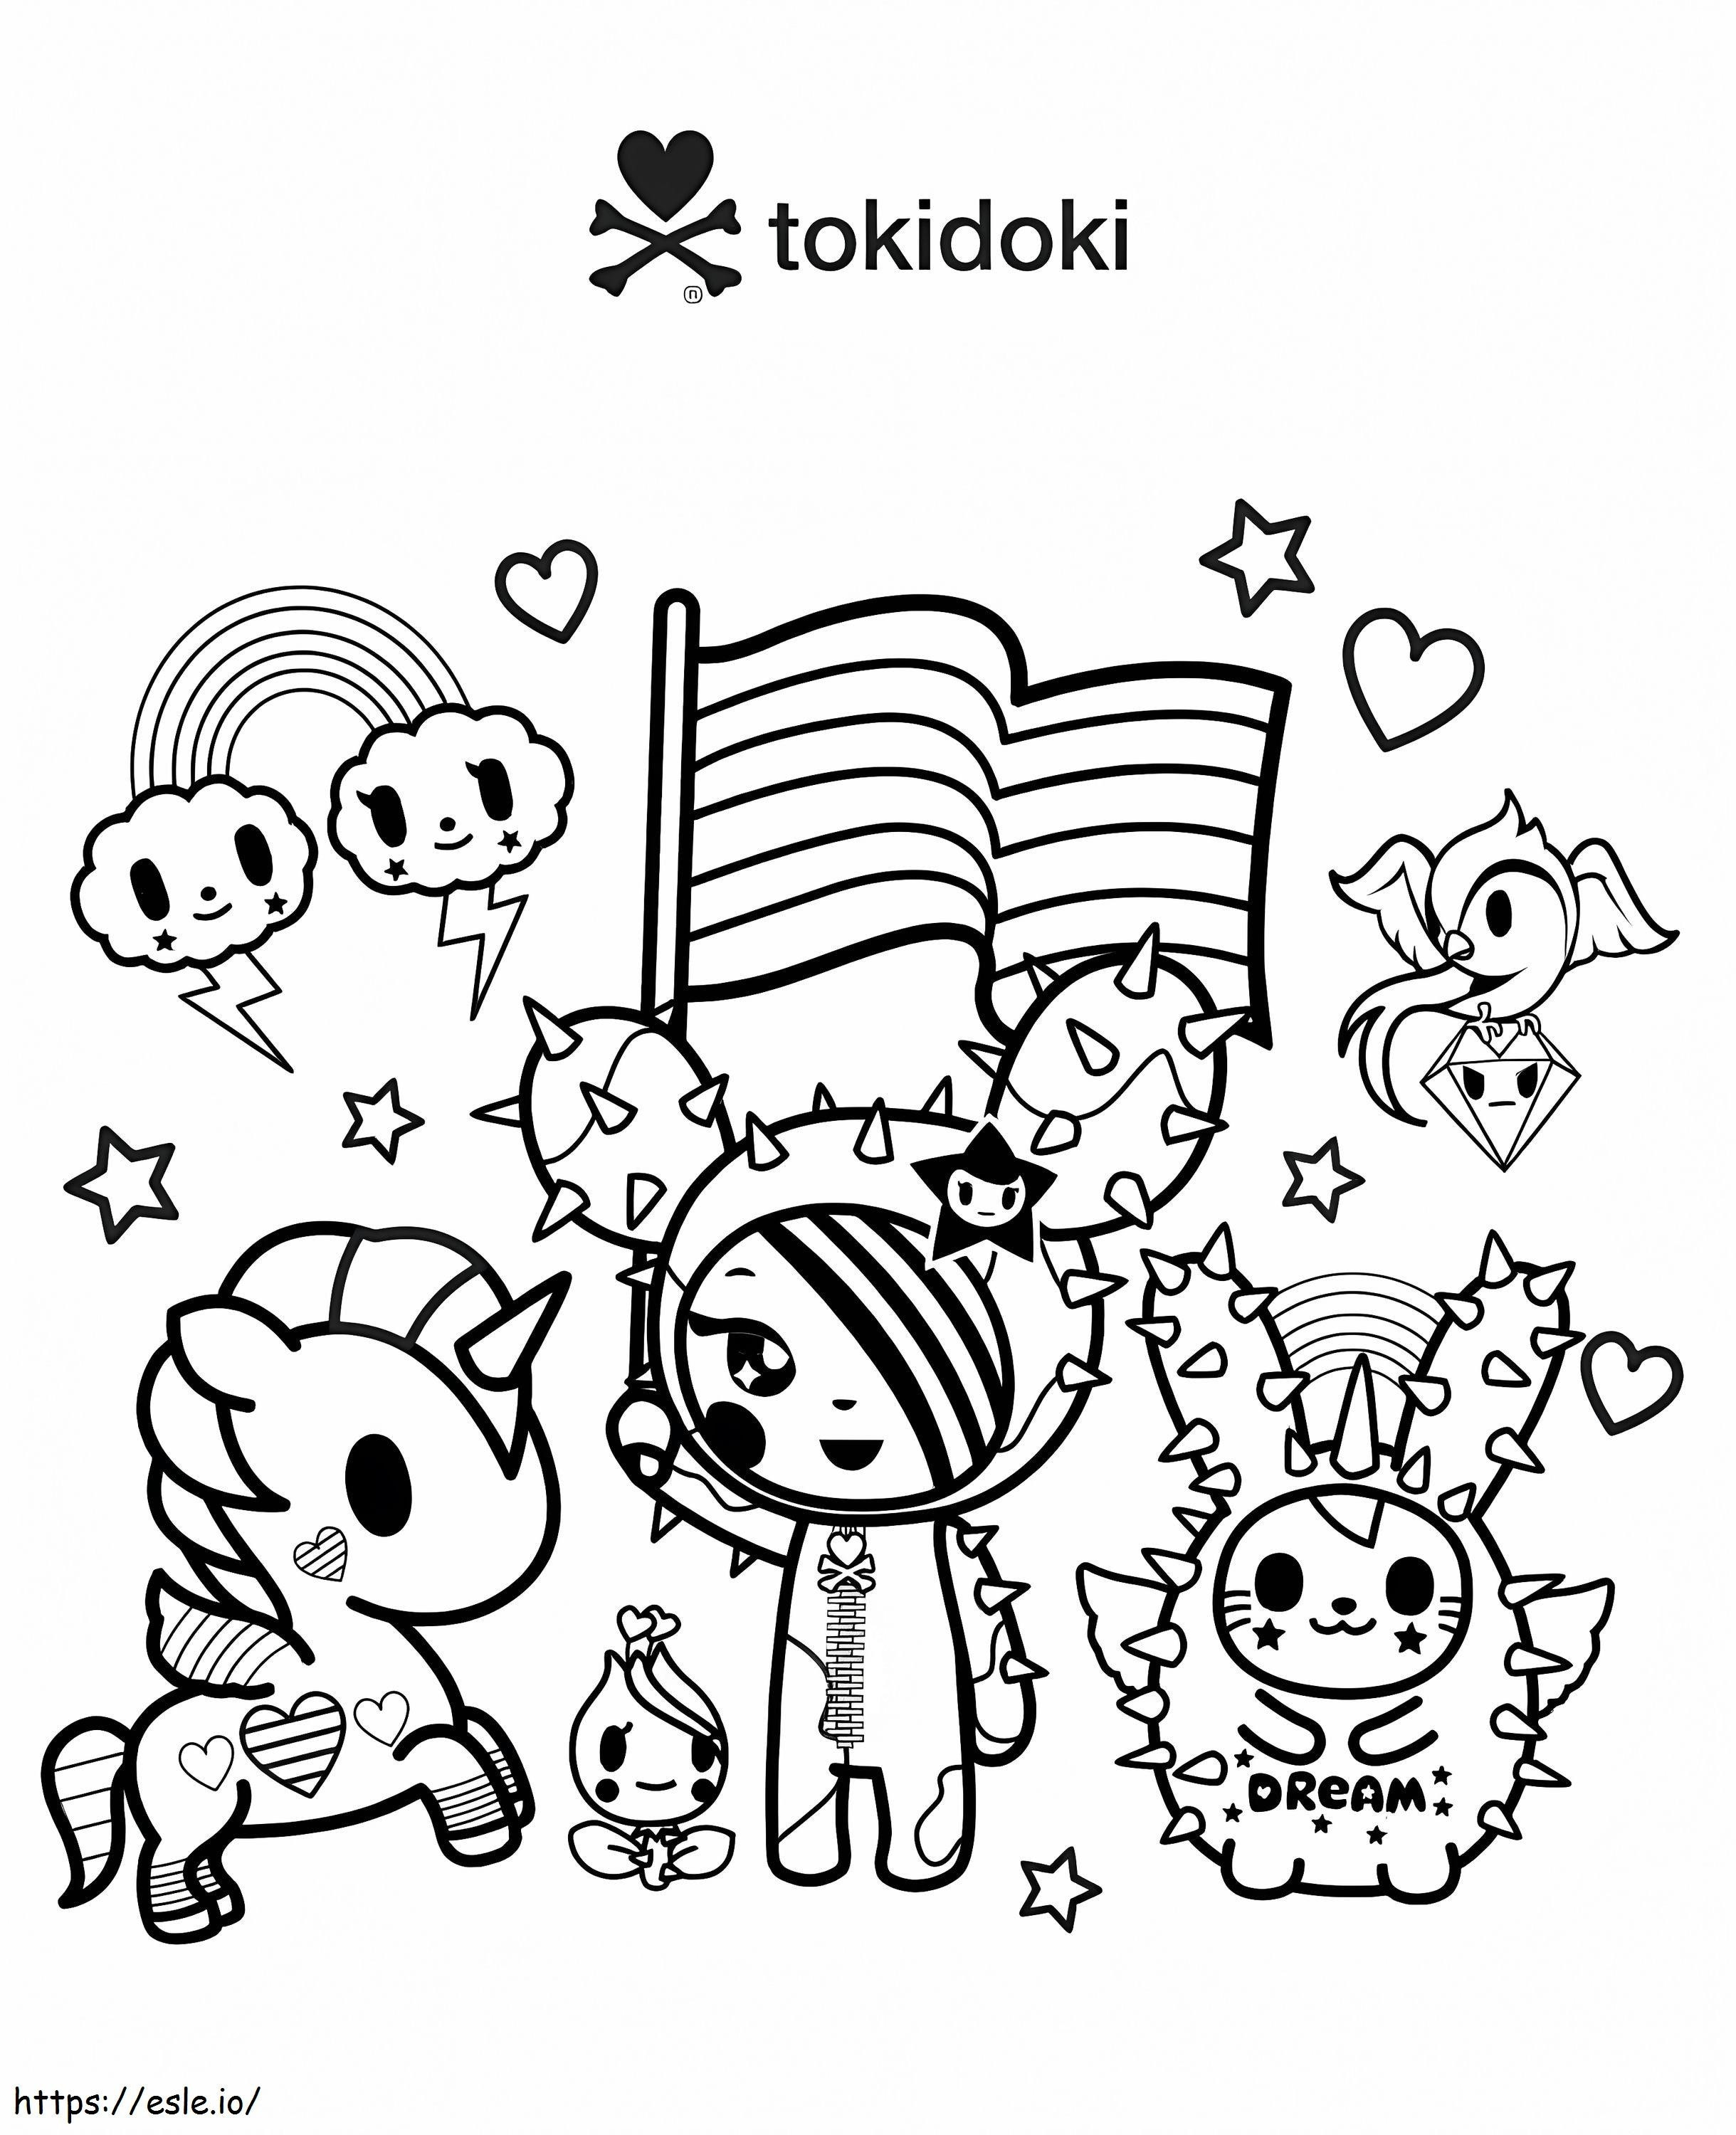 Festeggia l'Amore Tokidoki da colorare